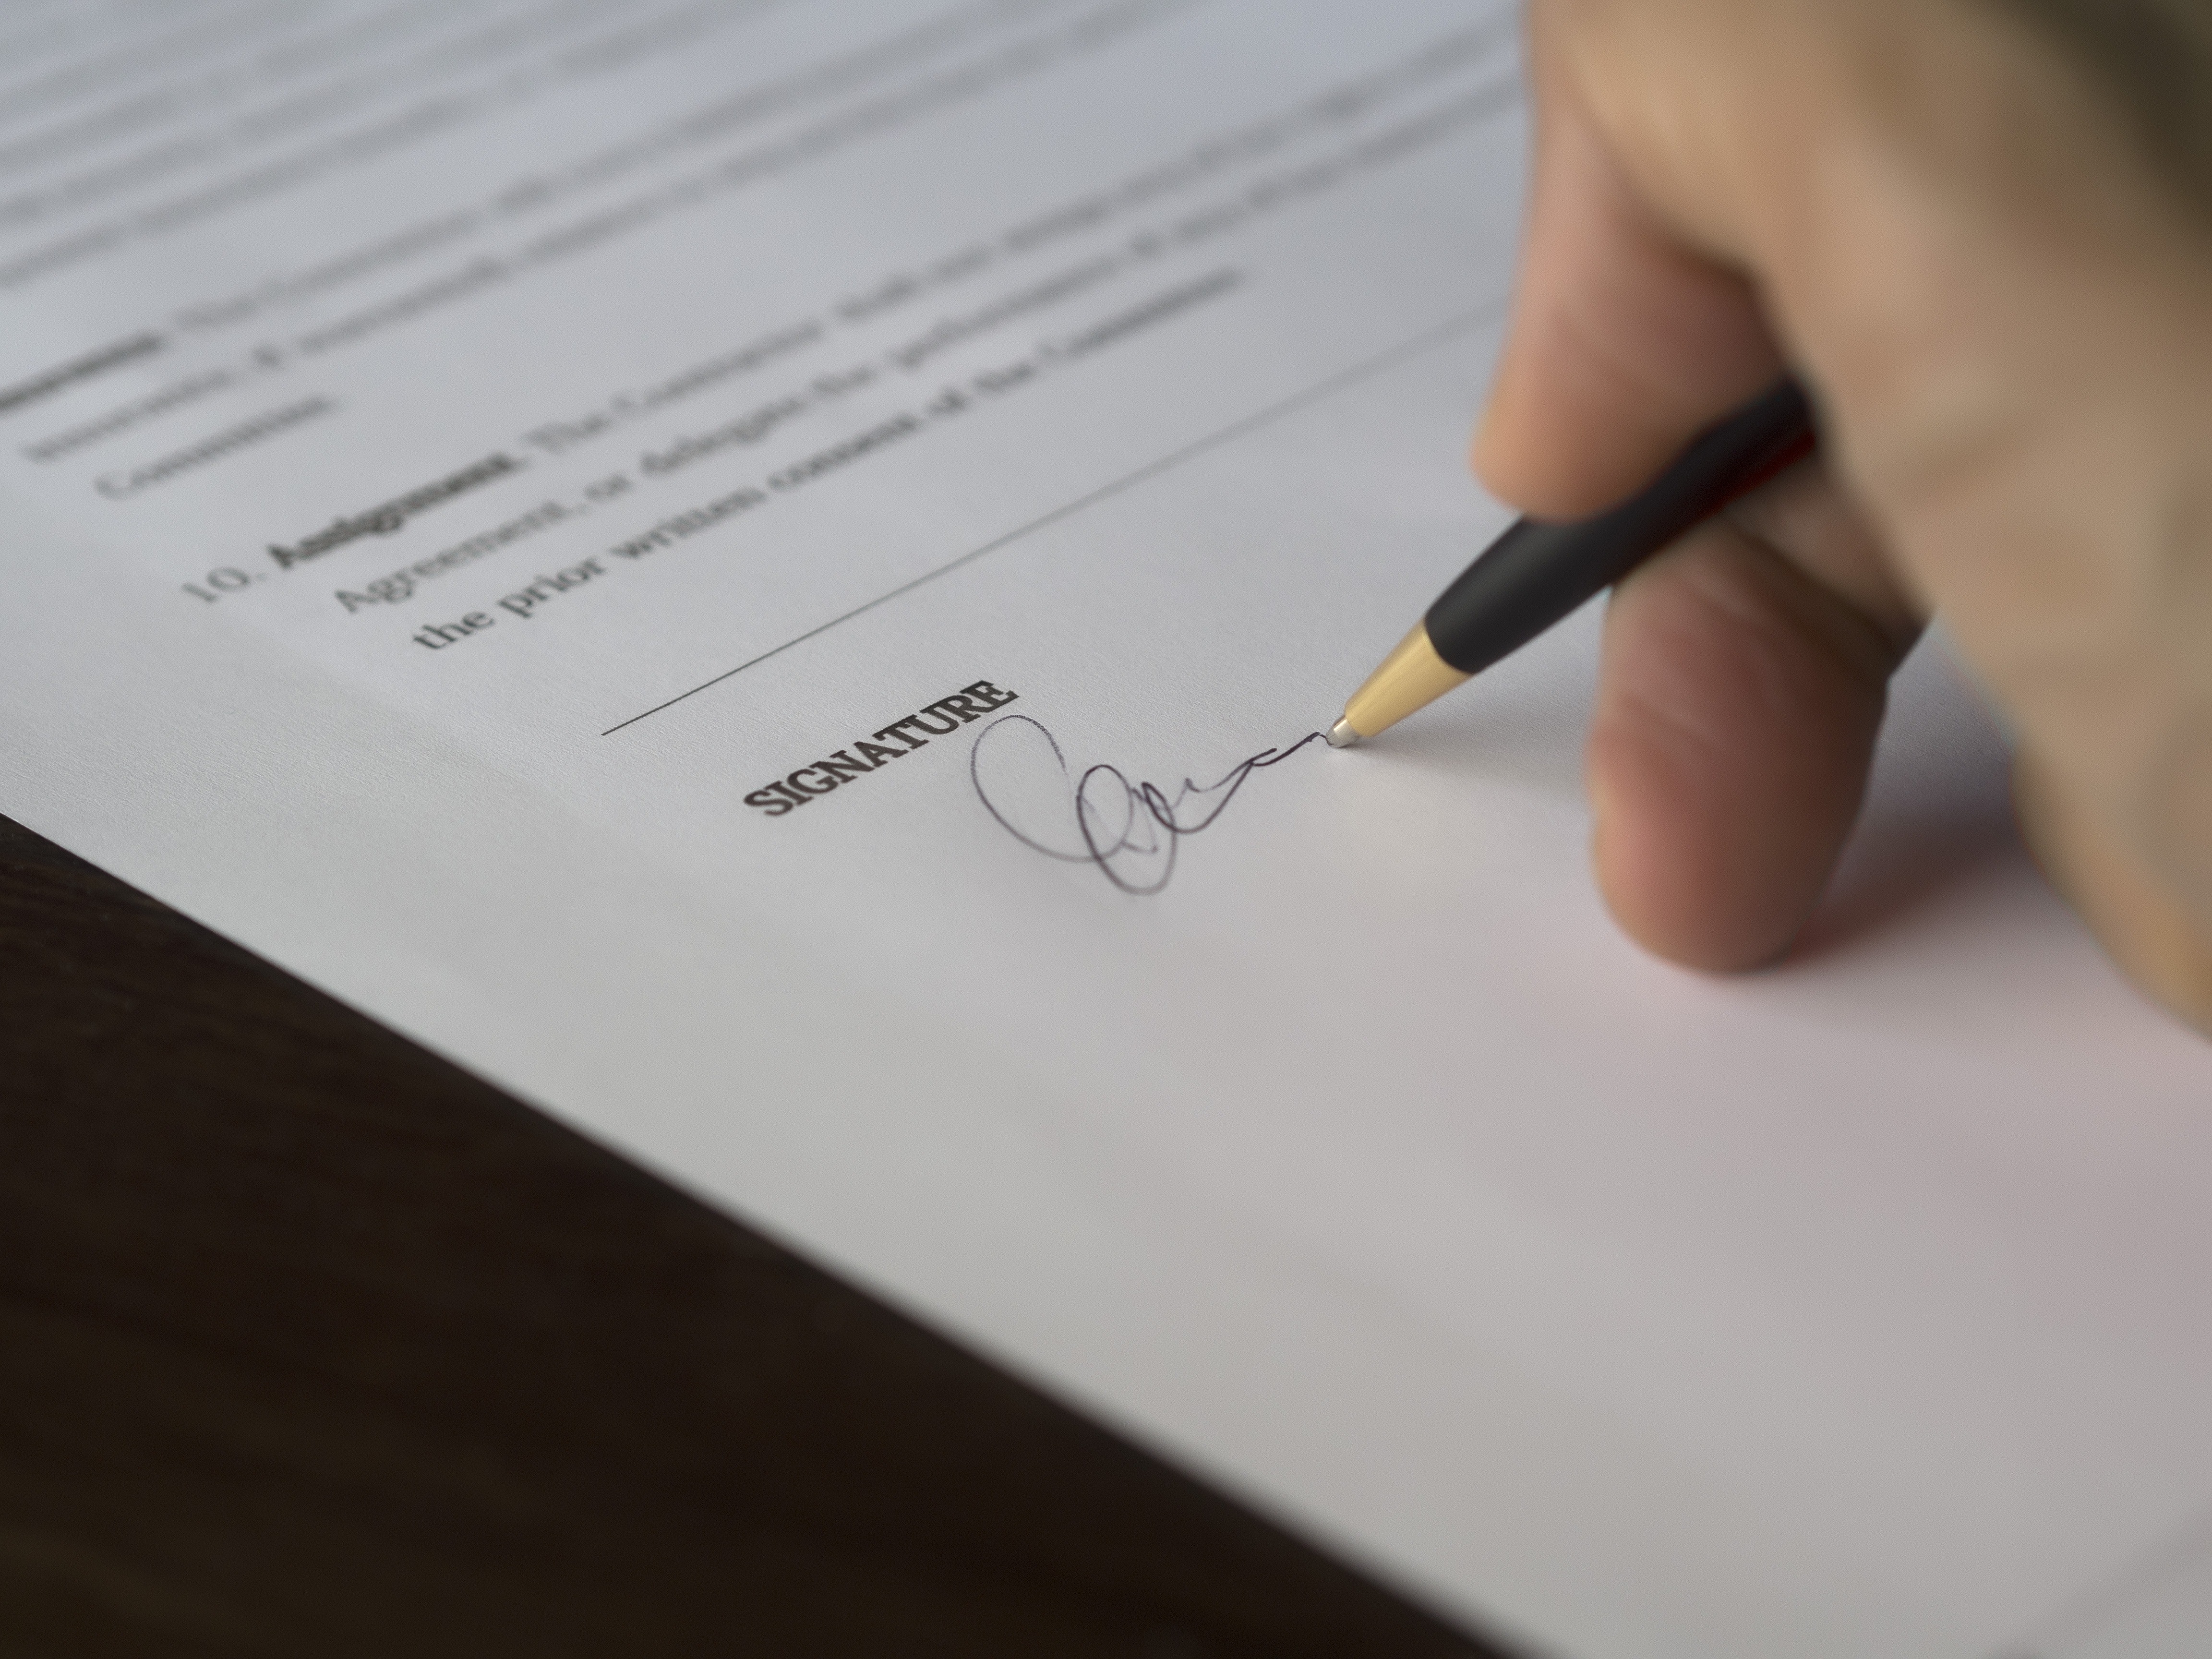 Analise o contrato antes de assinar